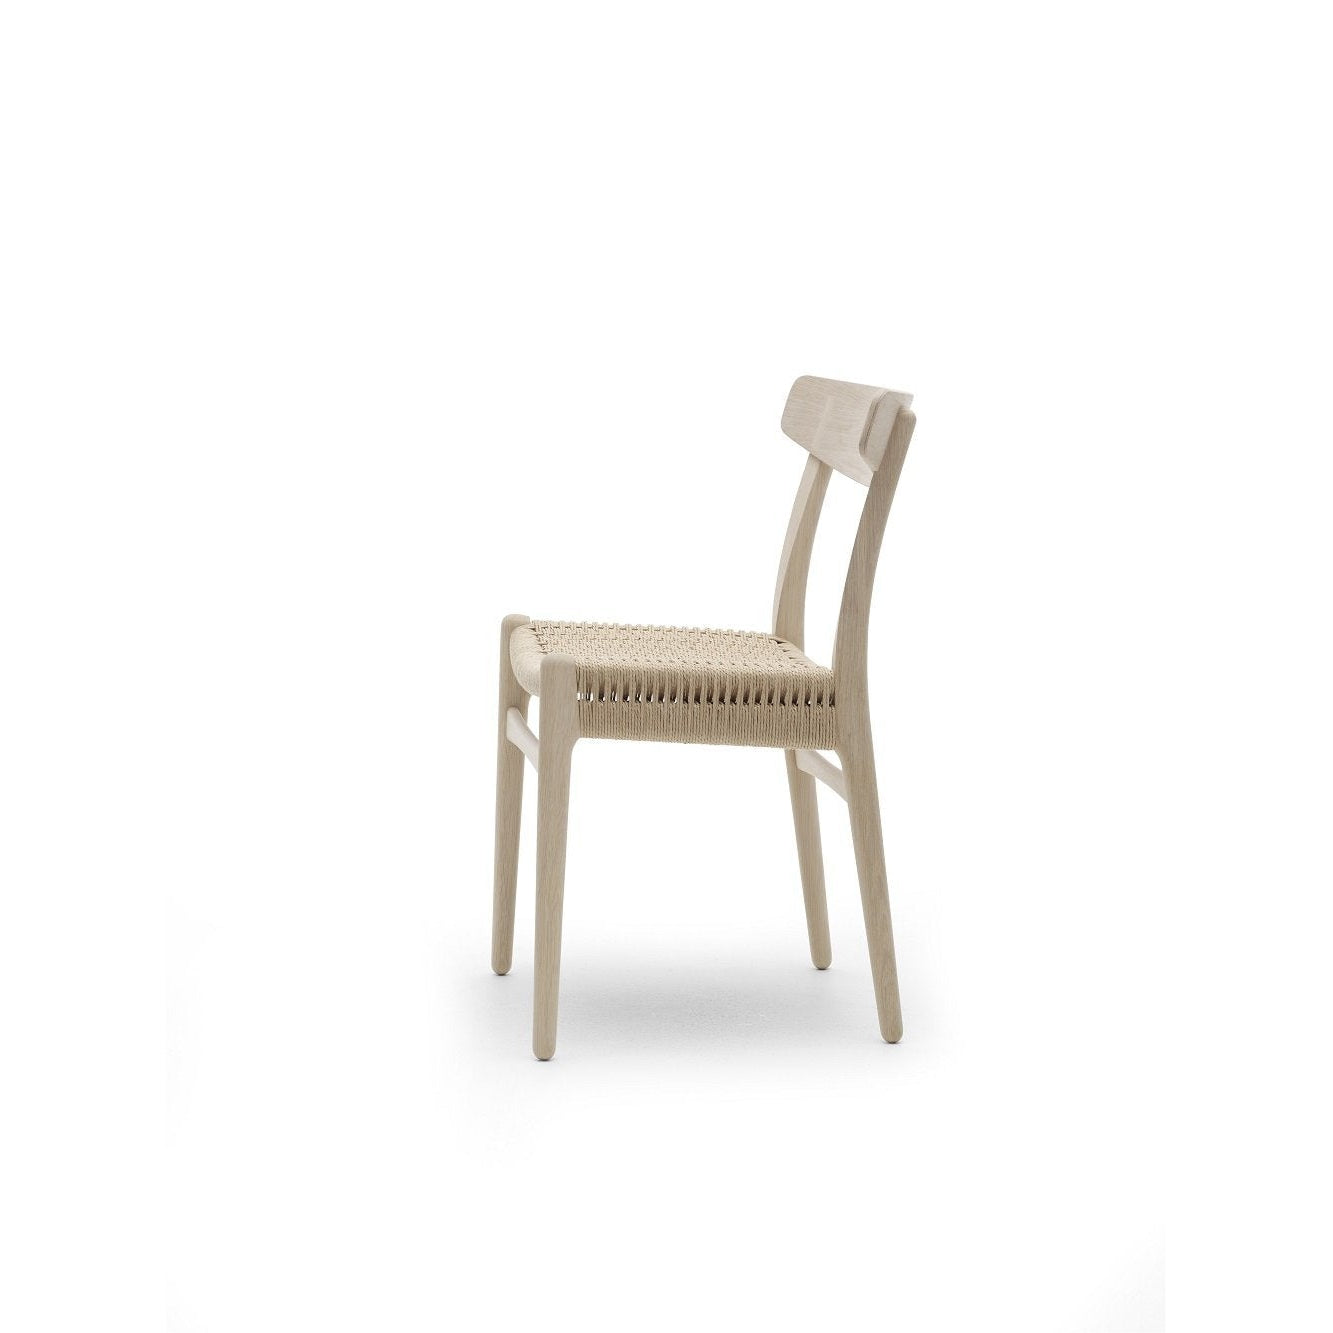 Carl Hansen CH23 -stol, tvål ek med naturflätan, ek back & plugg